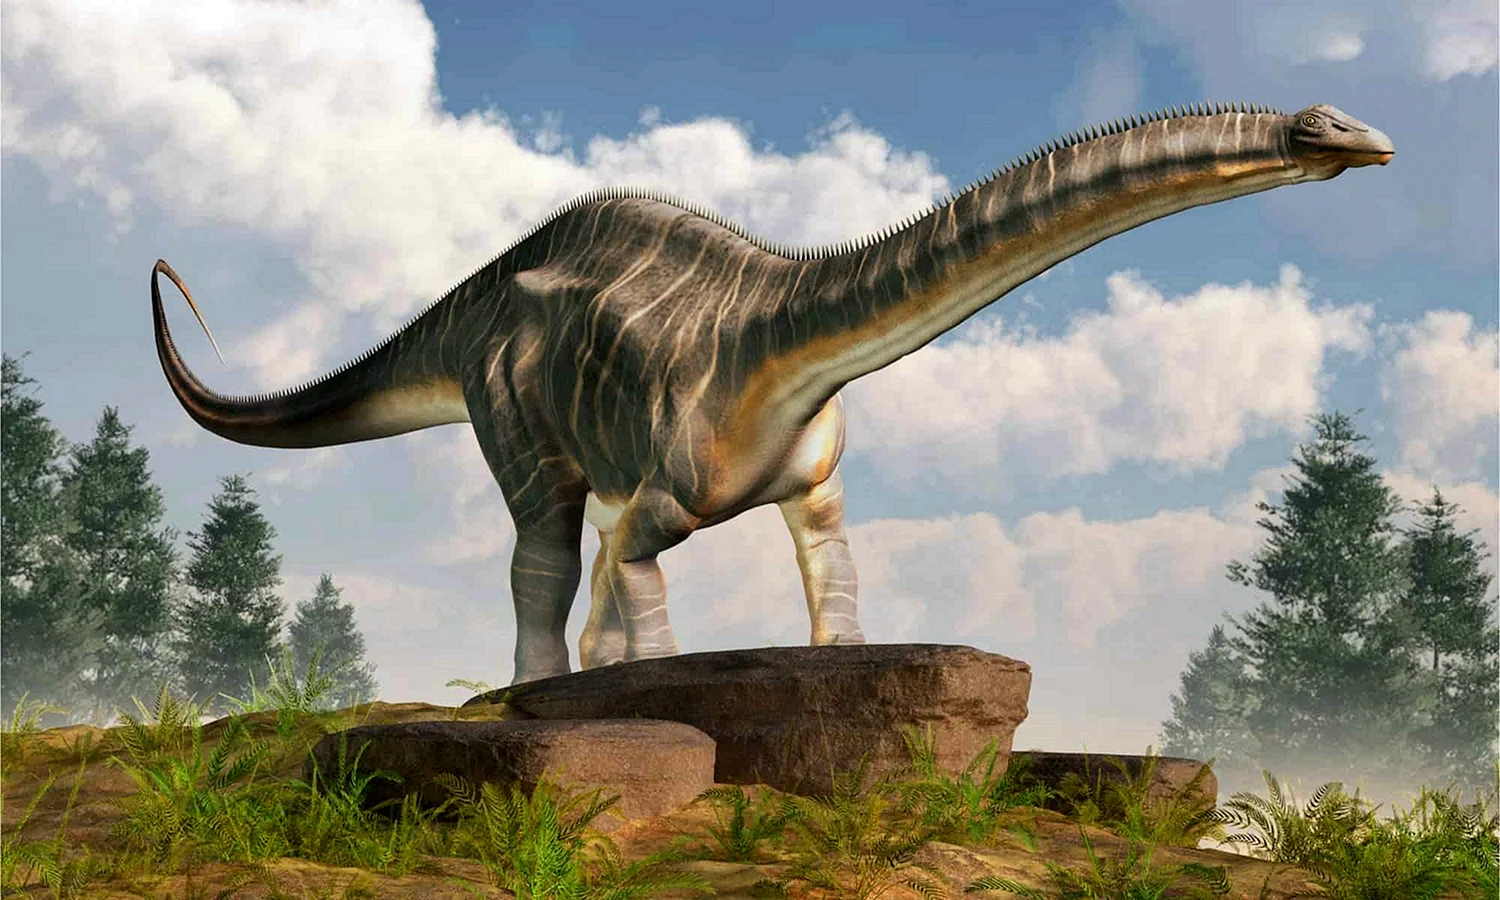 Апатозавр динозавр